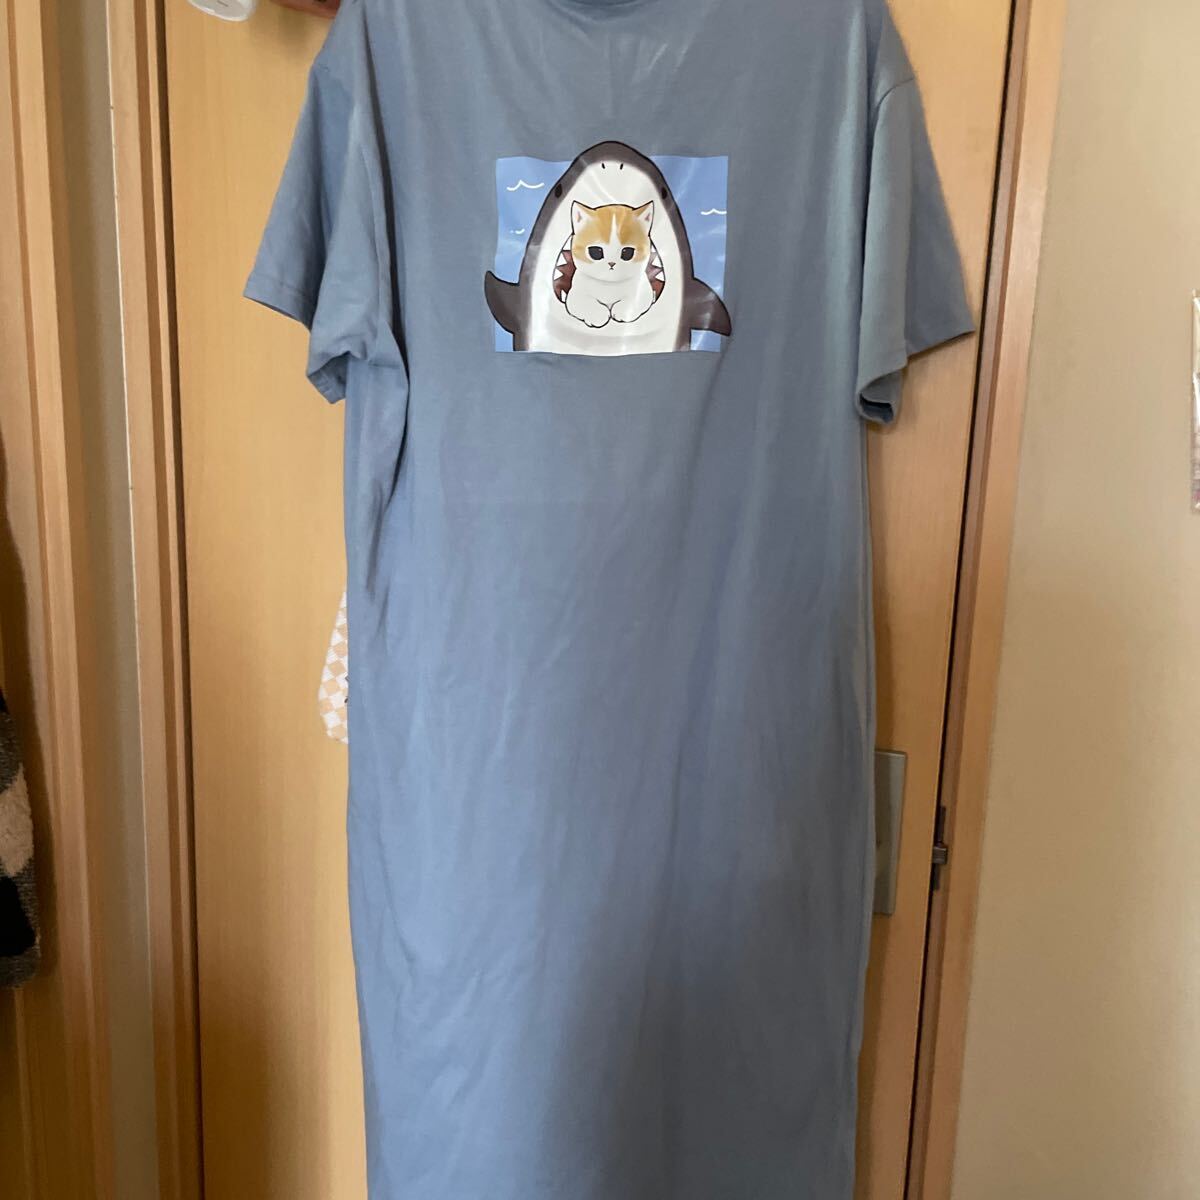  девочка One-piece модель пижама часть магазин надеты салон одежда очень популярный mof Sand 